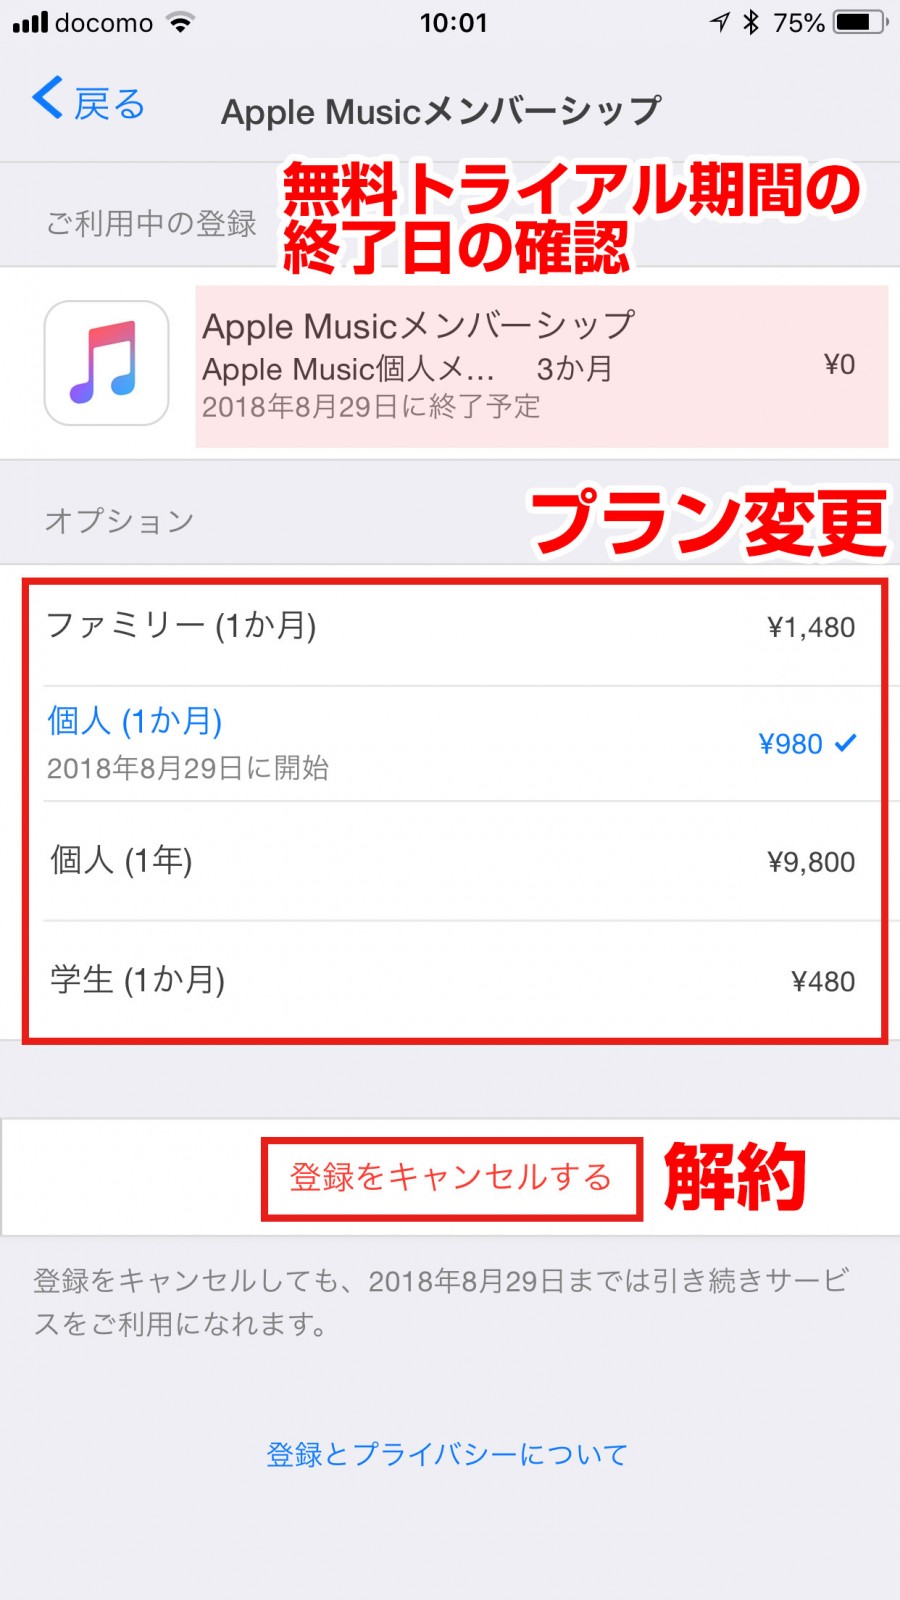 ミュージック 期間 アップル 無料 『Apple Music』3ヶ月無料トライアル